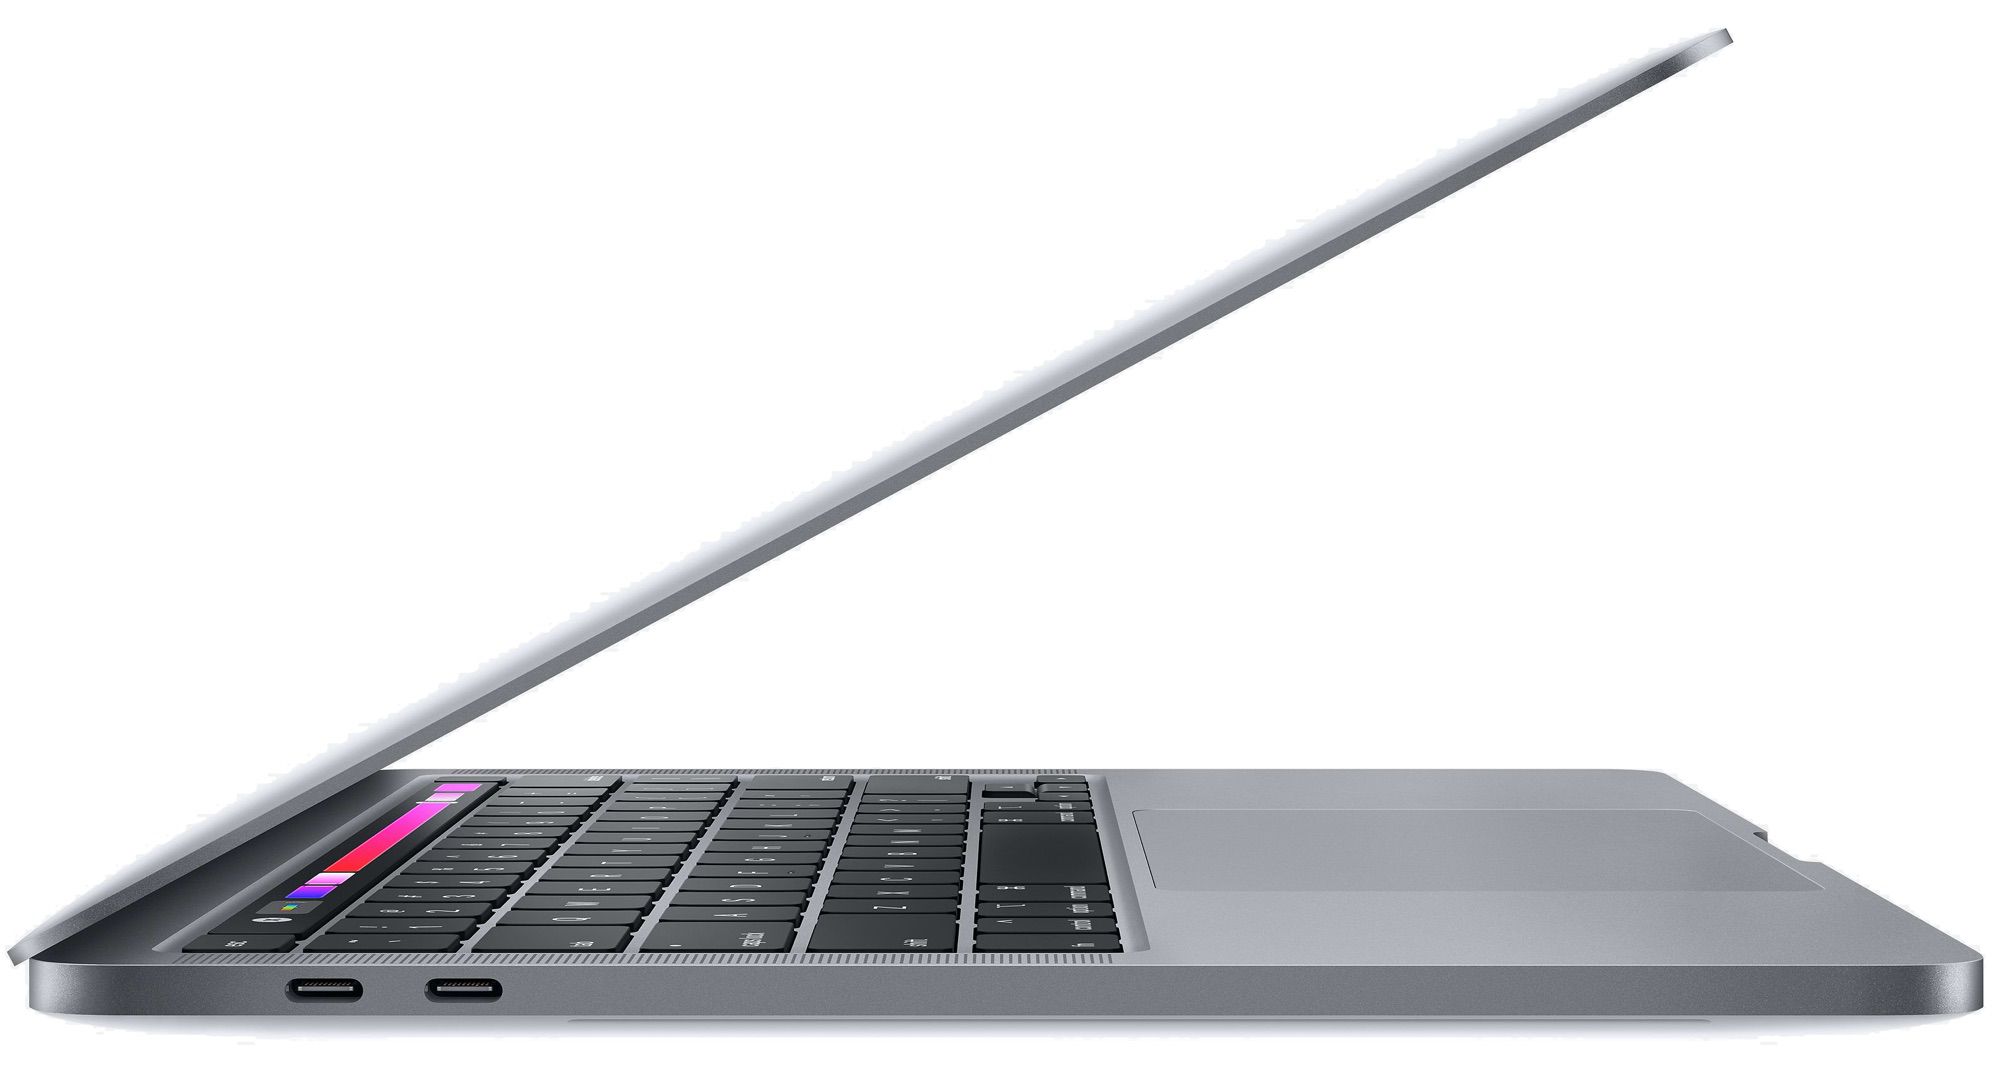 クリアランス卸値 macbook pro (13-inch,Mid 2012) ノートPC